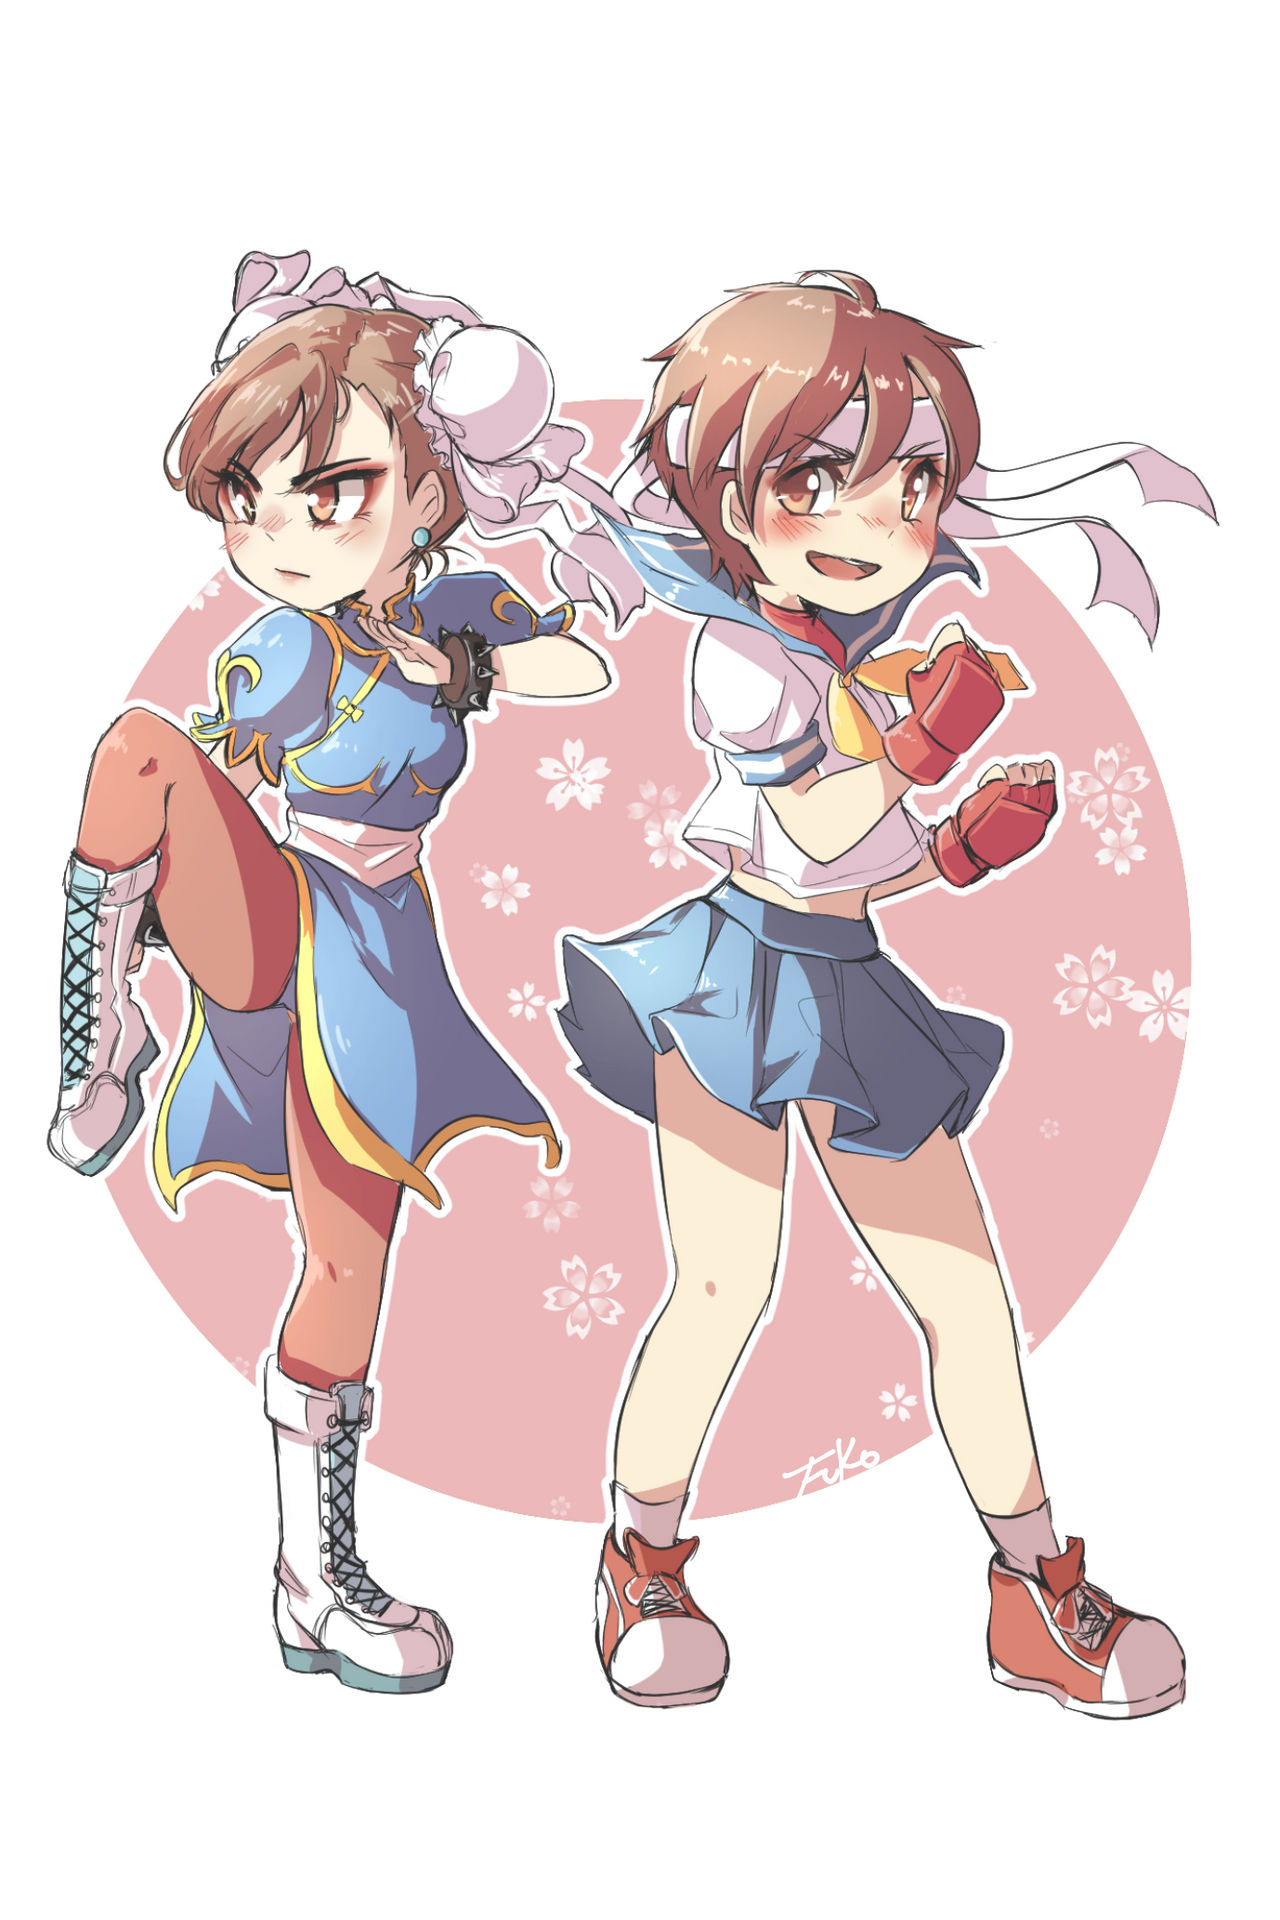 Street Fighter: Chun li and Sakura by Fuko-chan on DeviantArt